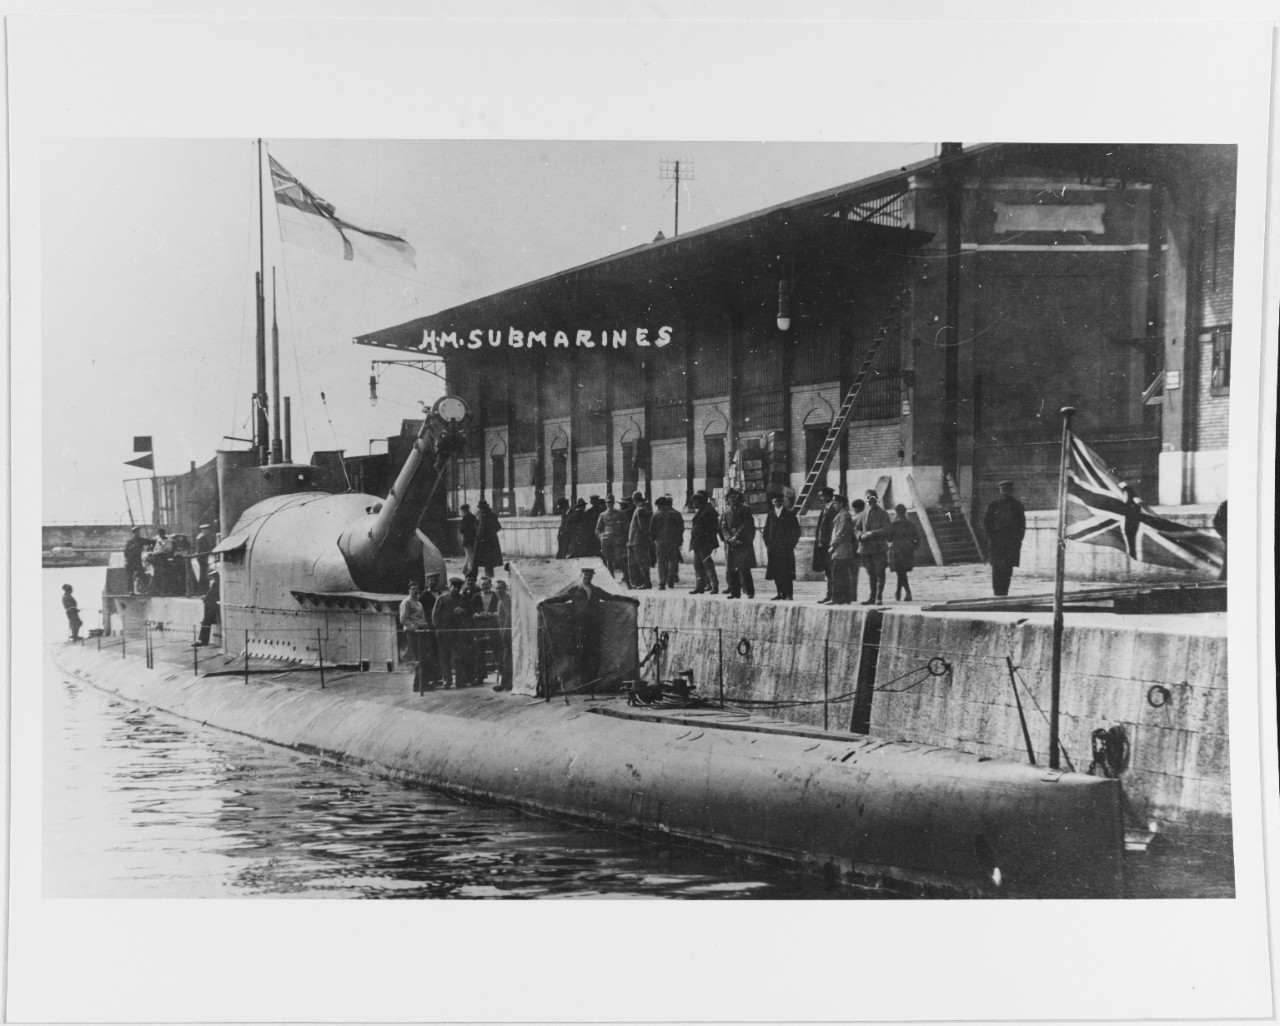 British "M" class submarine